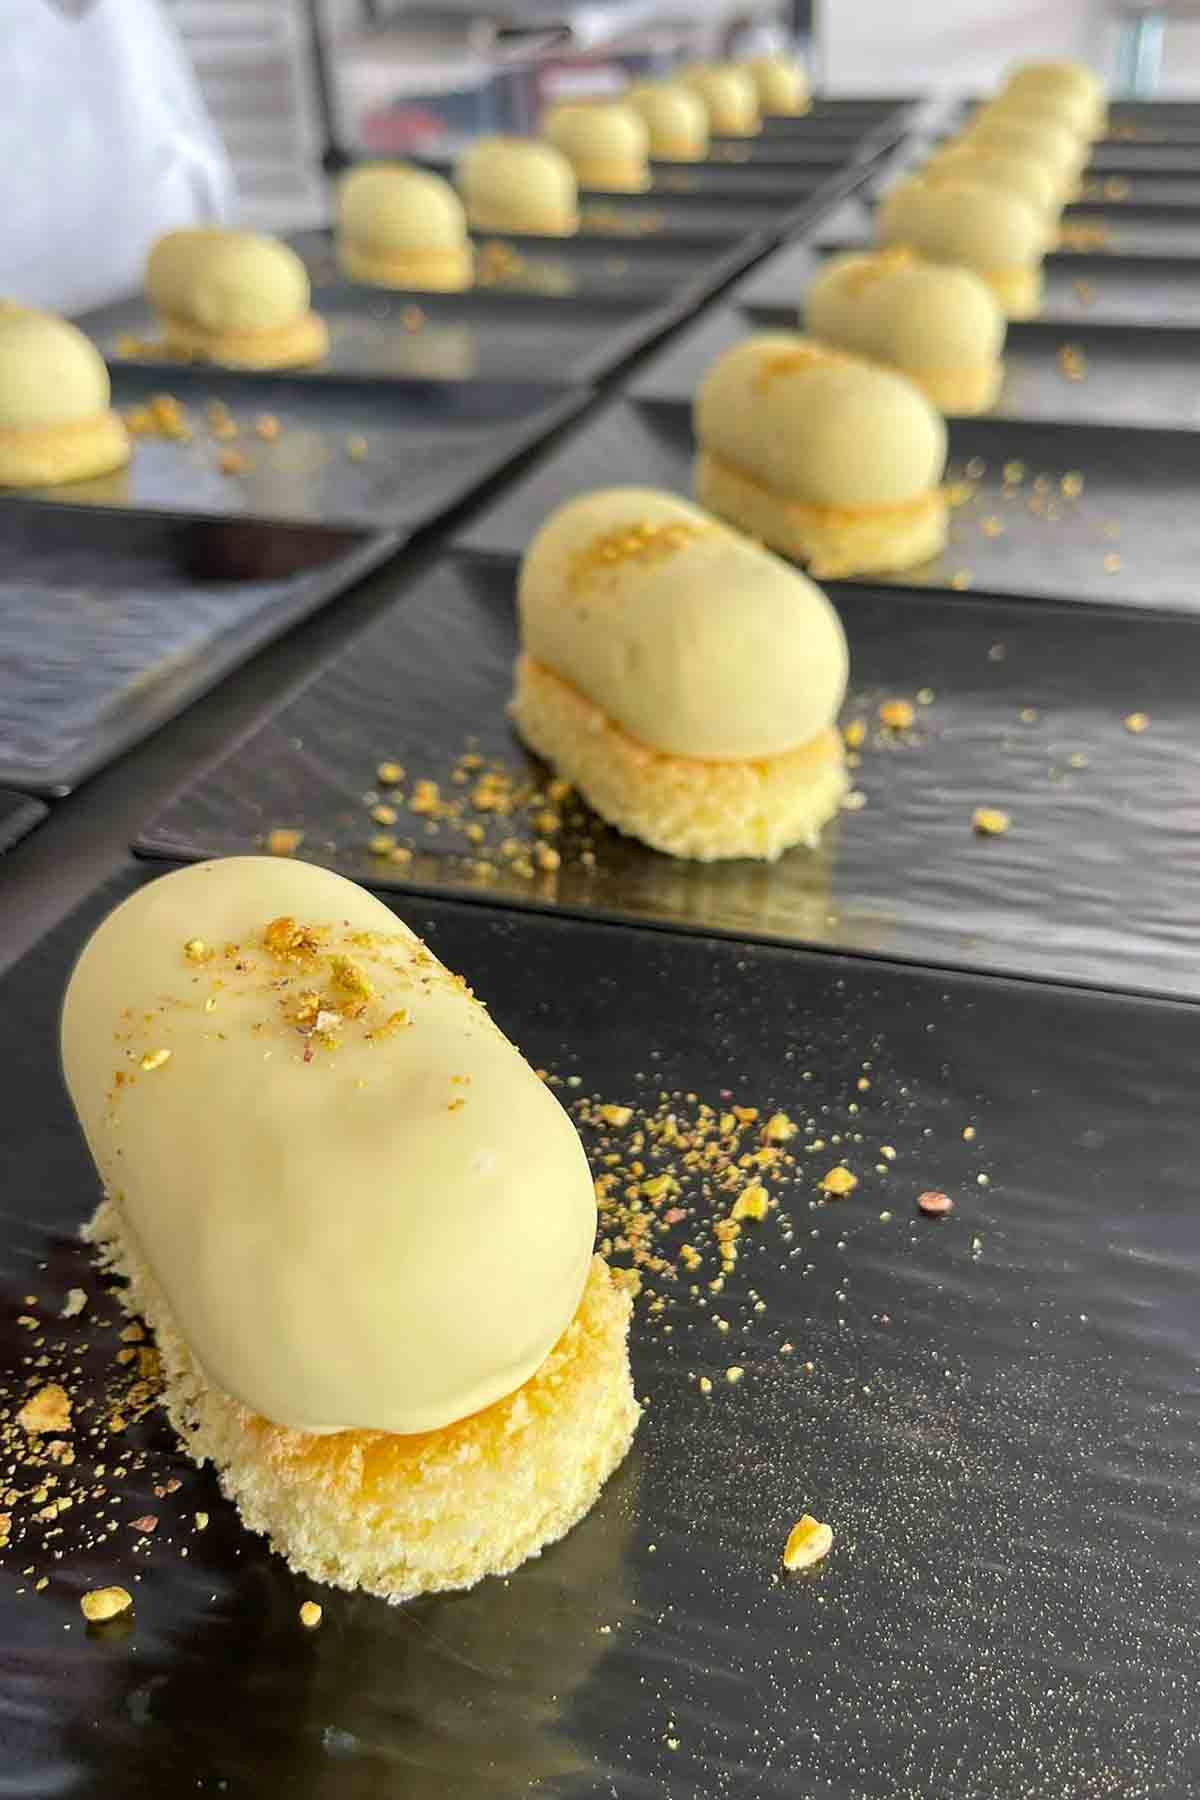 pistachio semifreddo dessert on white sponge cake.